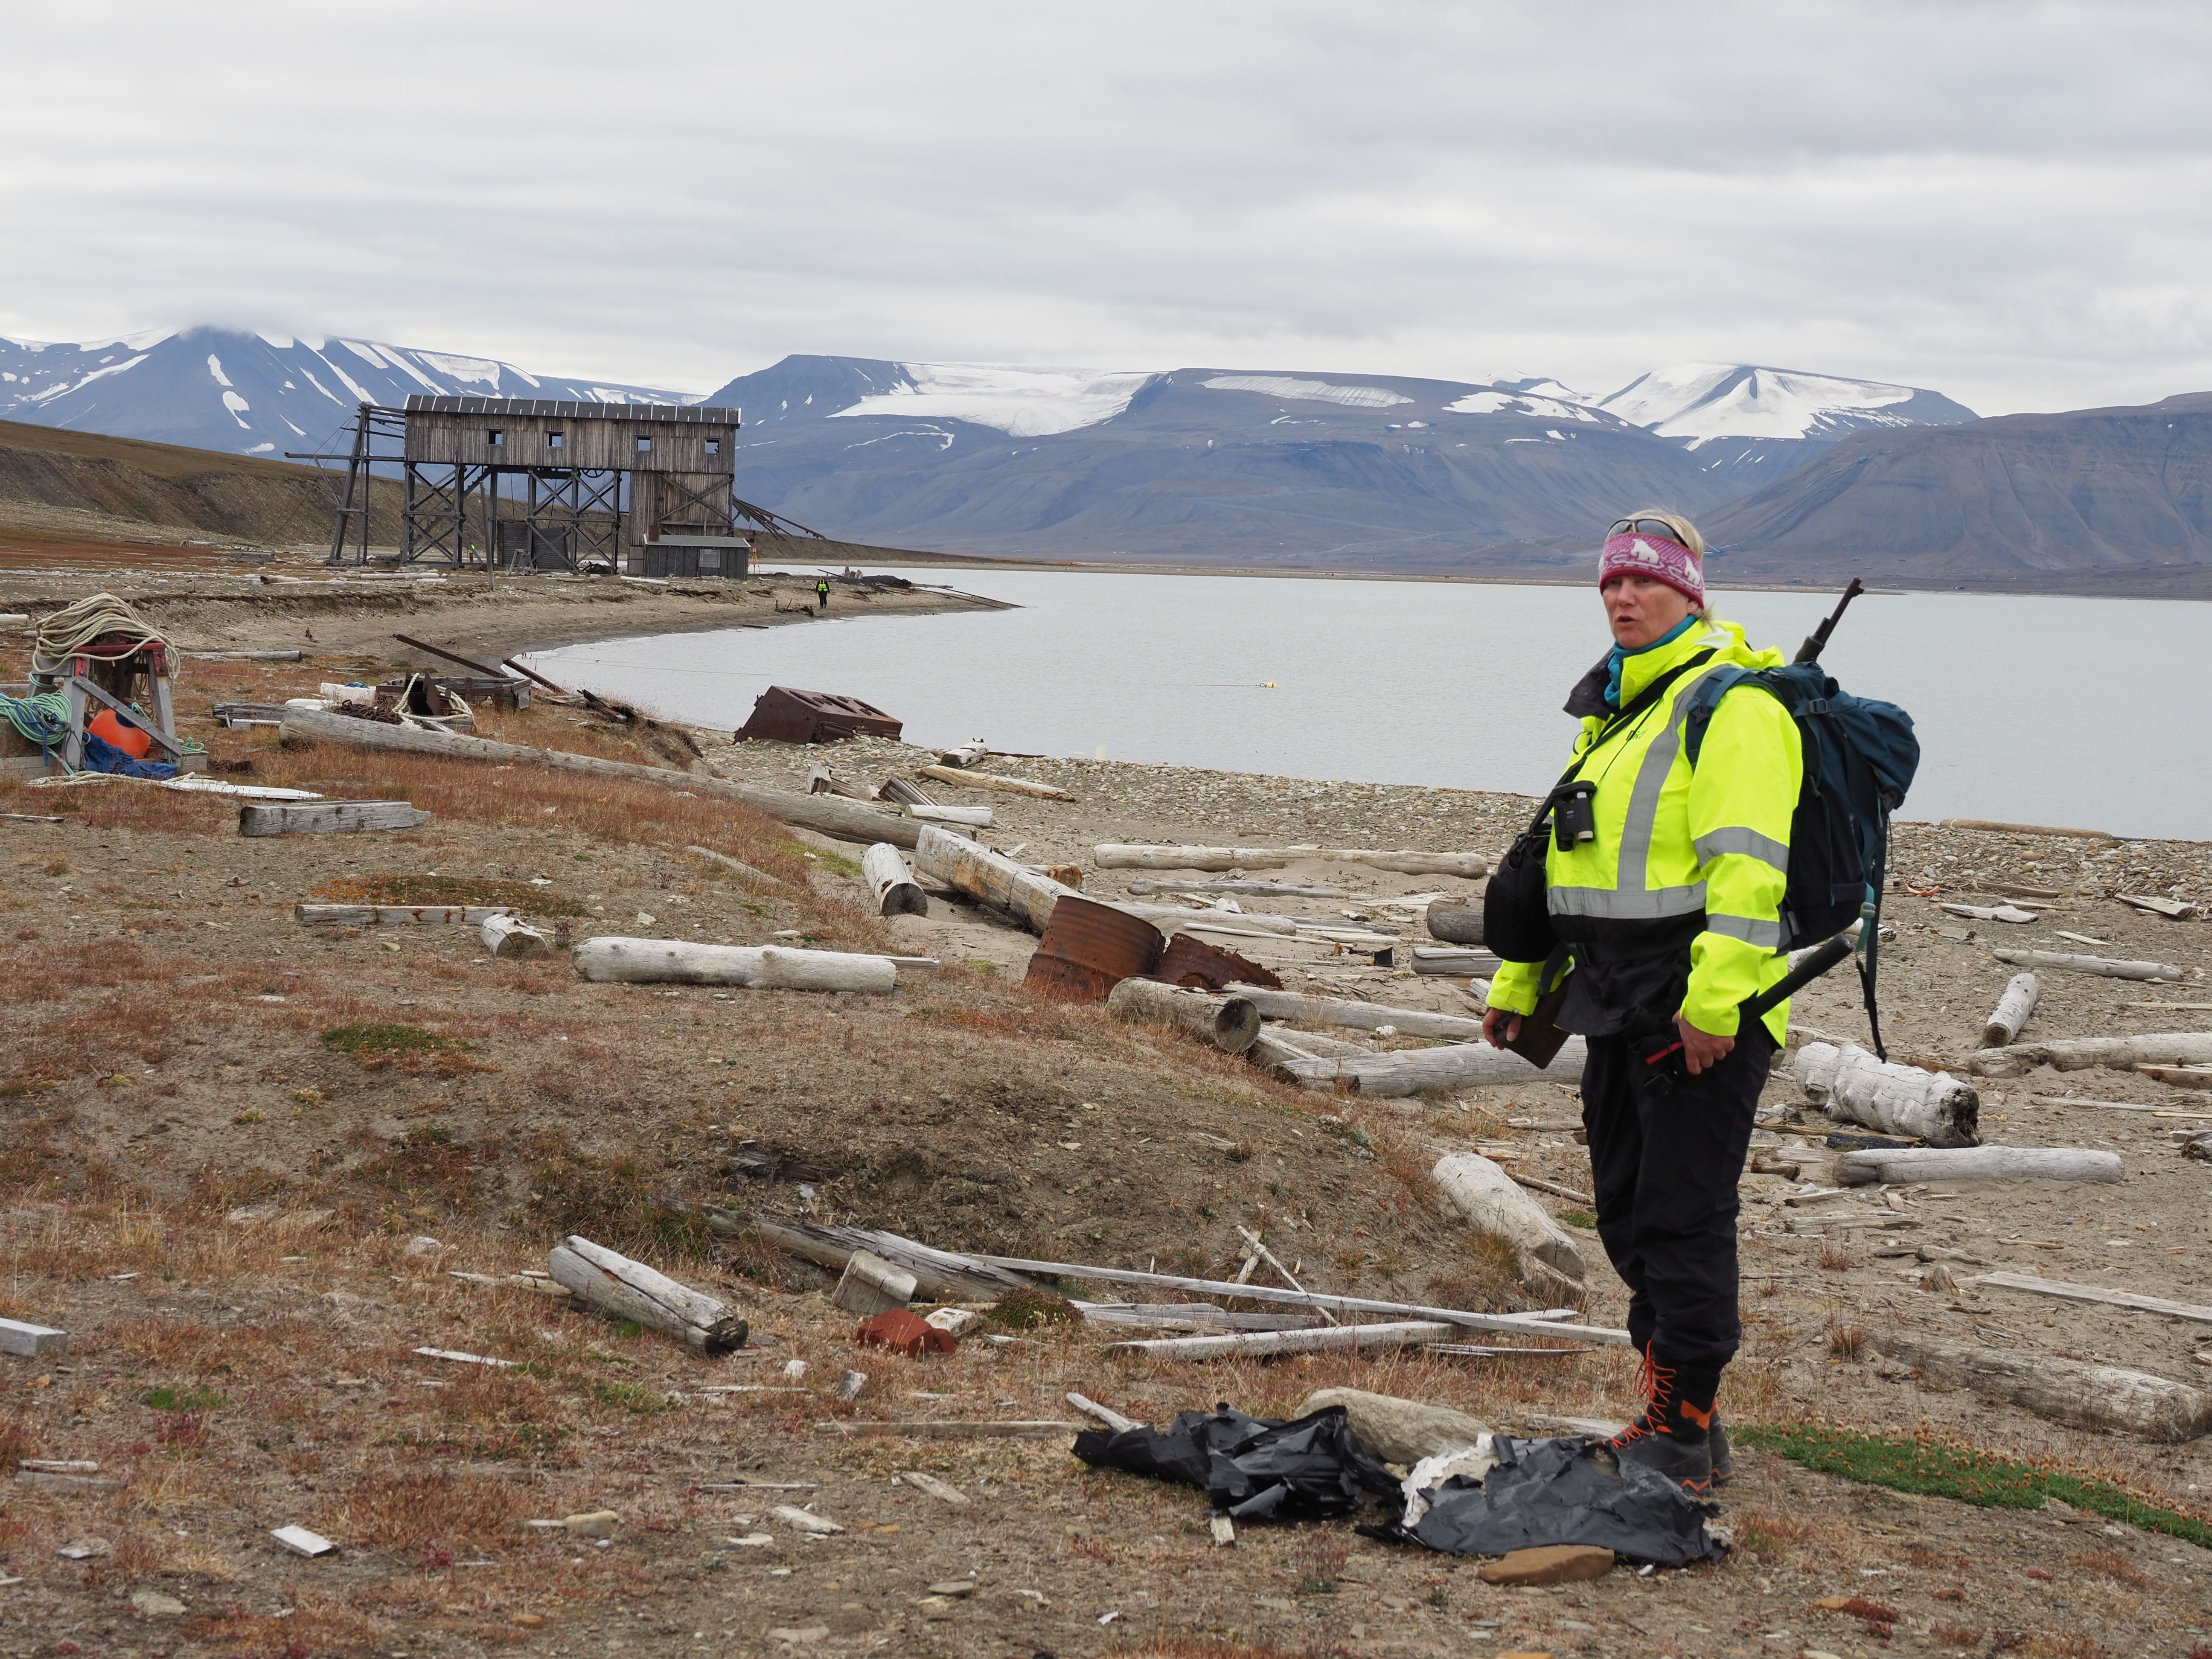 Selv om Hiorthhamn ligger nær Longyearbyen er det stor isbjørnfarre. Under sommernes feltarbeids-periode var det 5 isbjørn som lusket rundt i Isfjord-området. Foto: V.V.Martens/NIKU